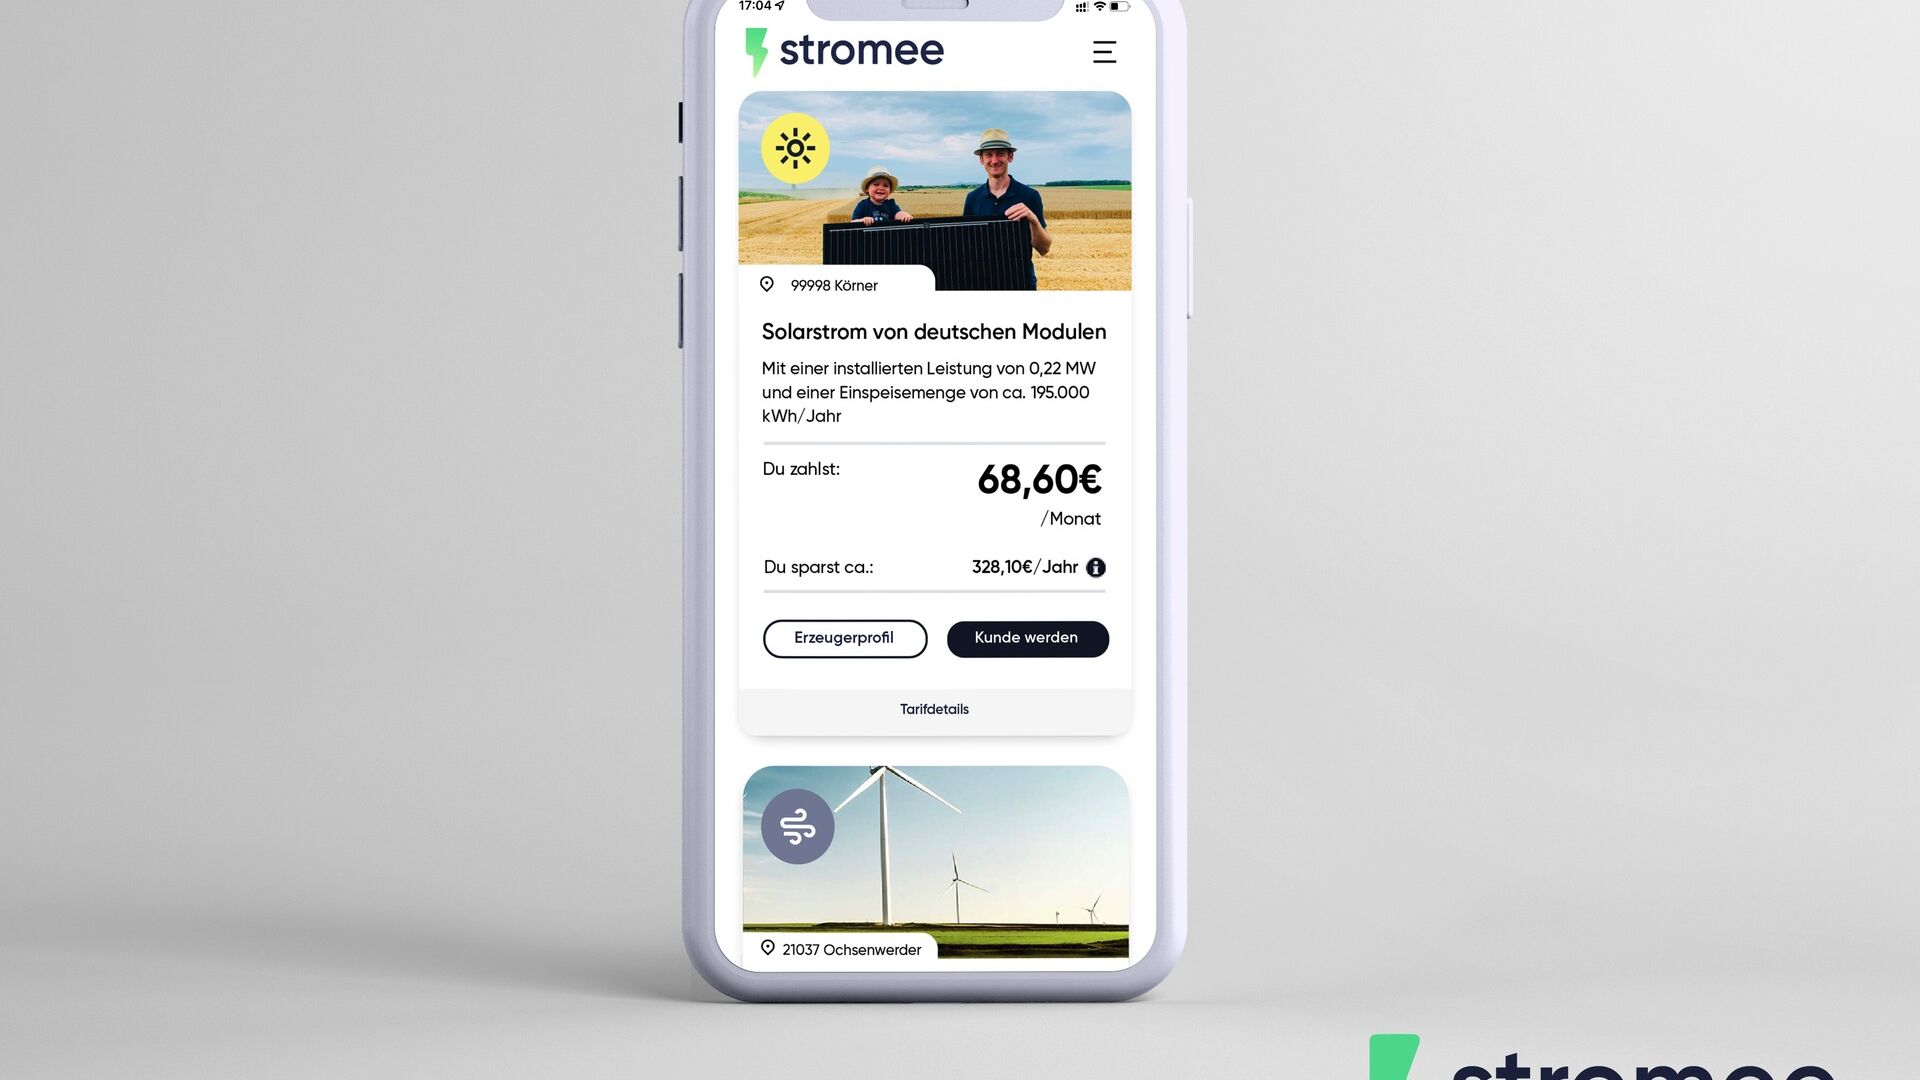 Alemania: la aplicación de la empresa Stromee en un teléfono inteligente